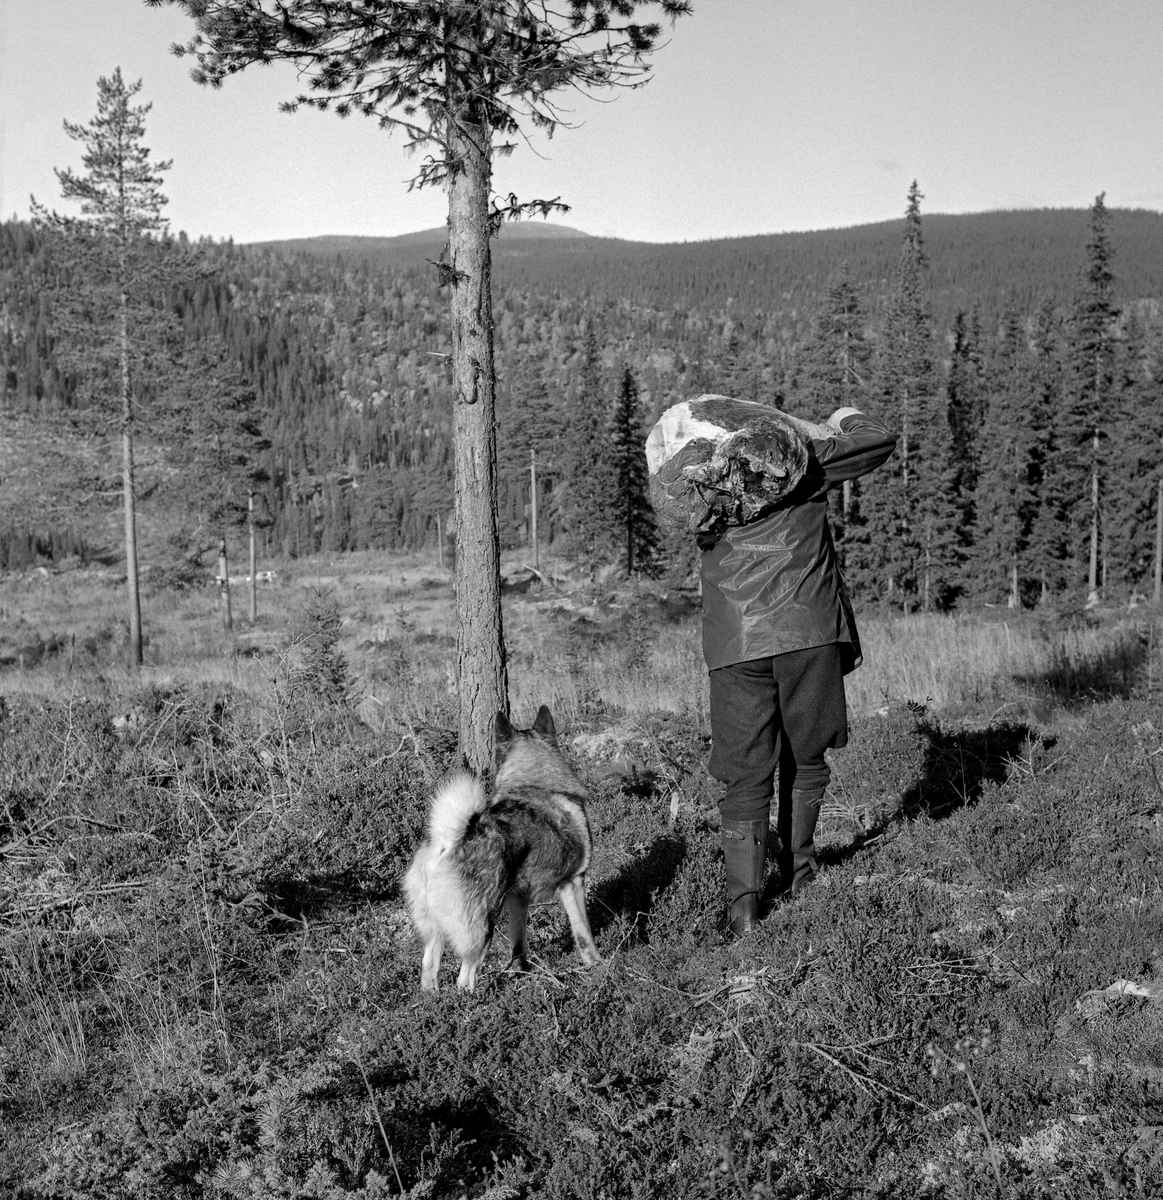 En elgjeger bærer etlår over skuldra, tett fulgt av hunden sin.  Fotografiet er tatt ei flate der det var gjensatt noen furuer som frøtrær.  Fotografiet ble tatt i traktene ved Rognvola i Stor-Elvdal høsten 1968.  Jegeren var medlem av jaktlaget til Borregaards skogsjef, Knut Torp.